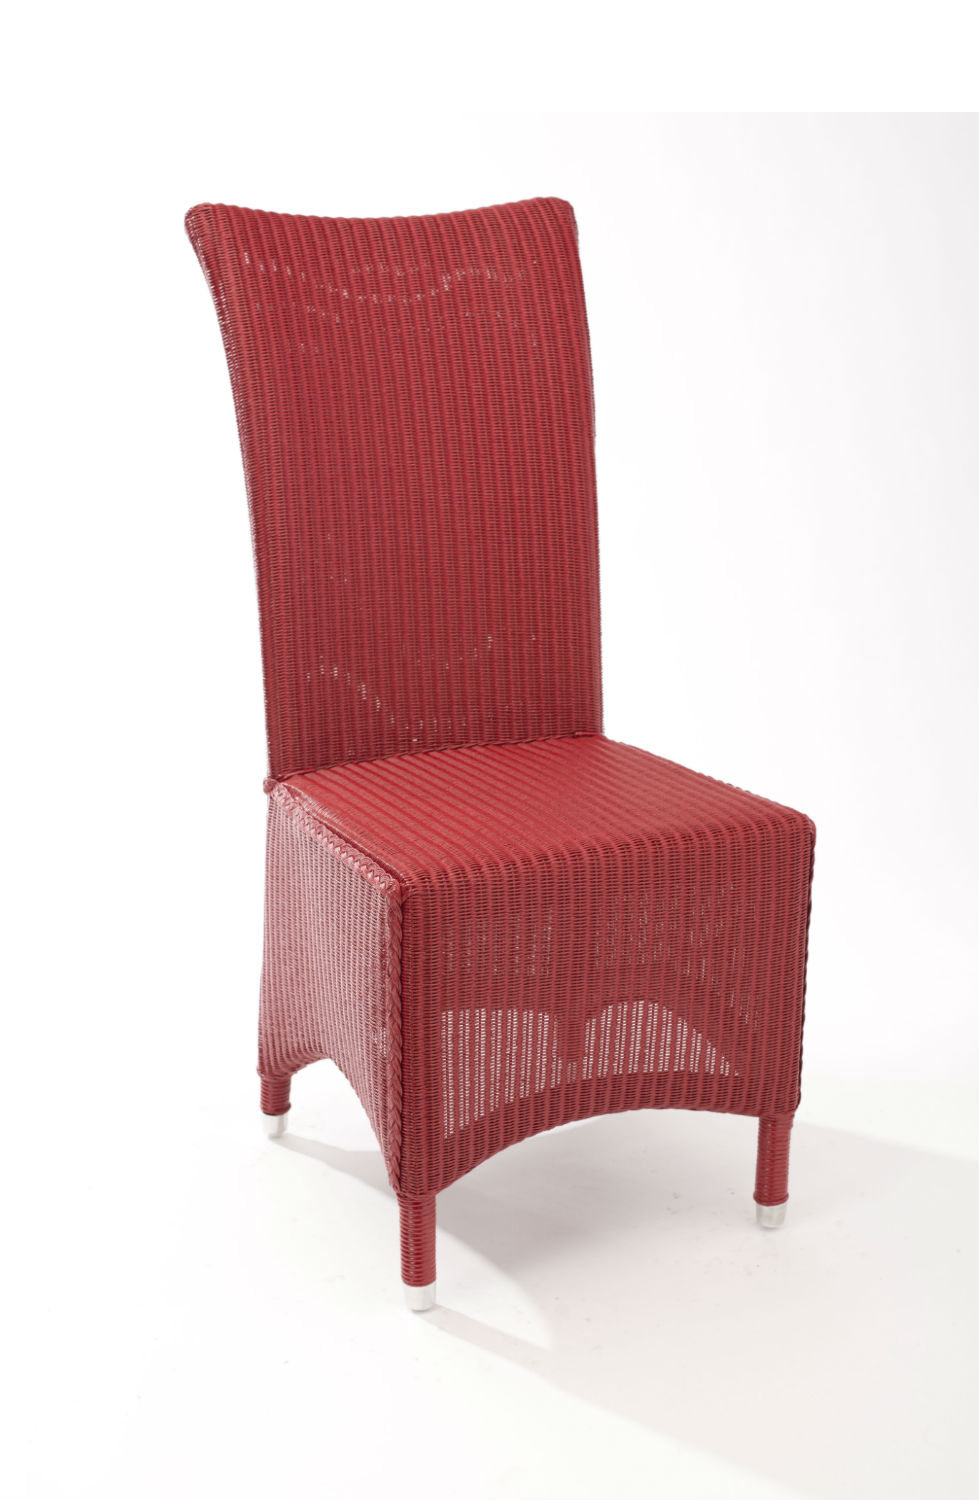 Chaise esthétique en loom framboise